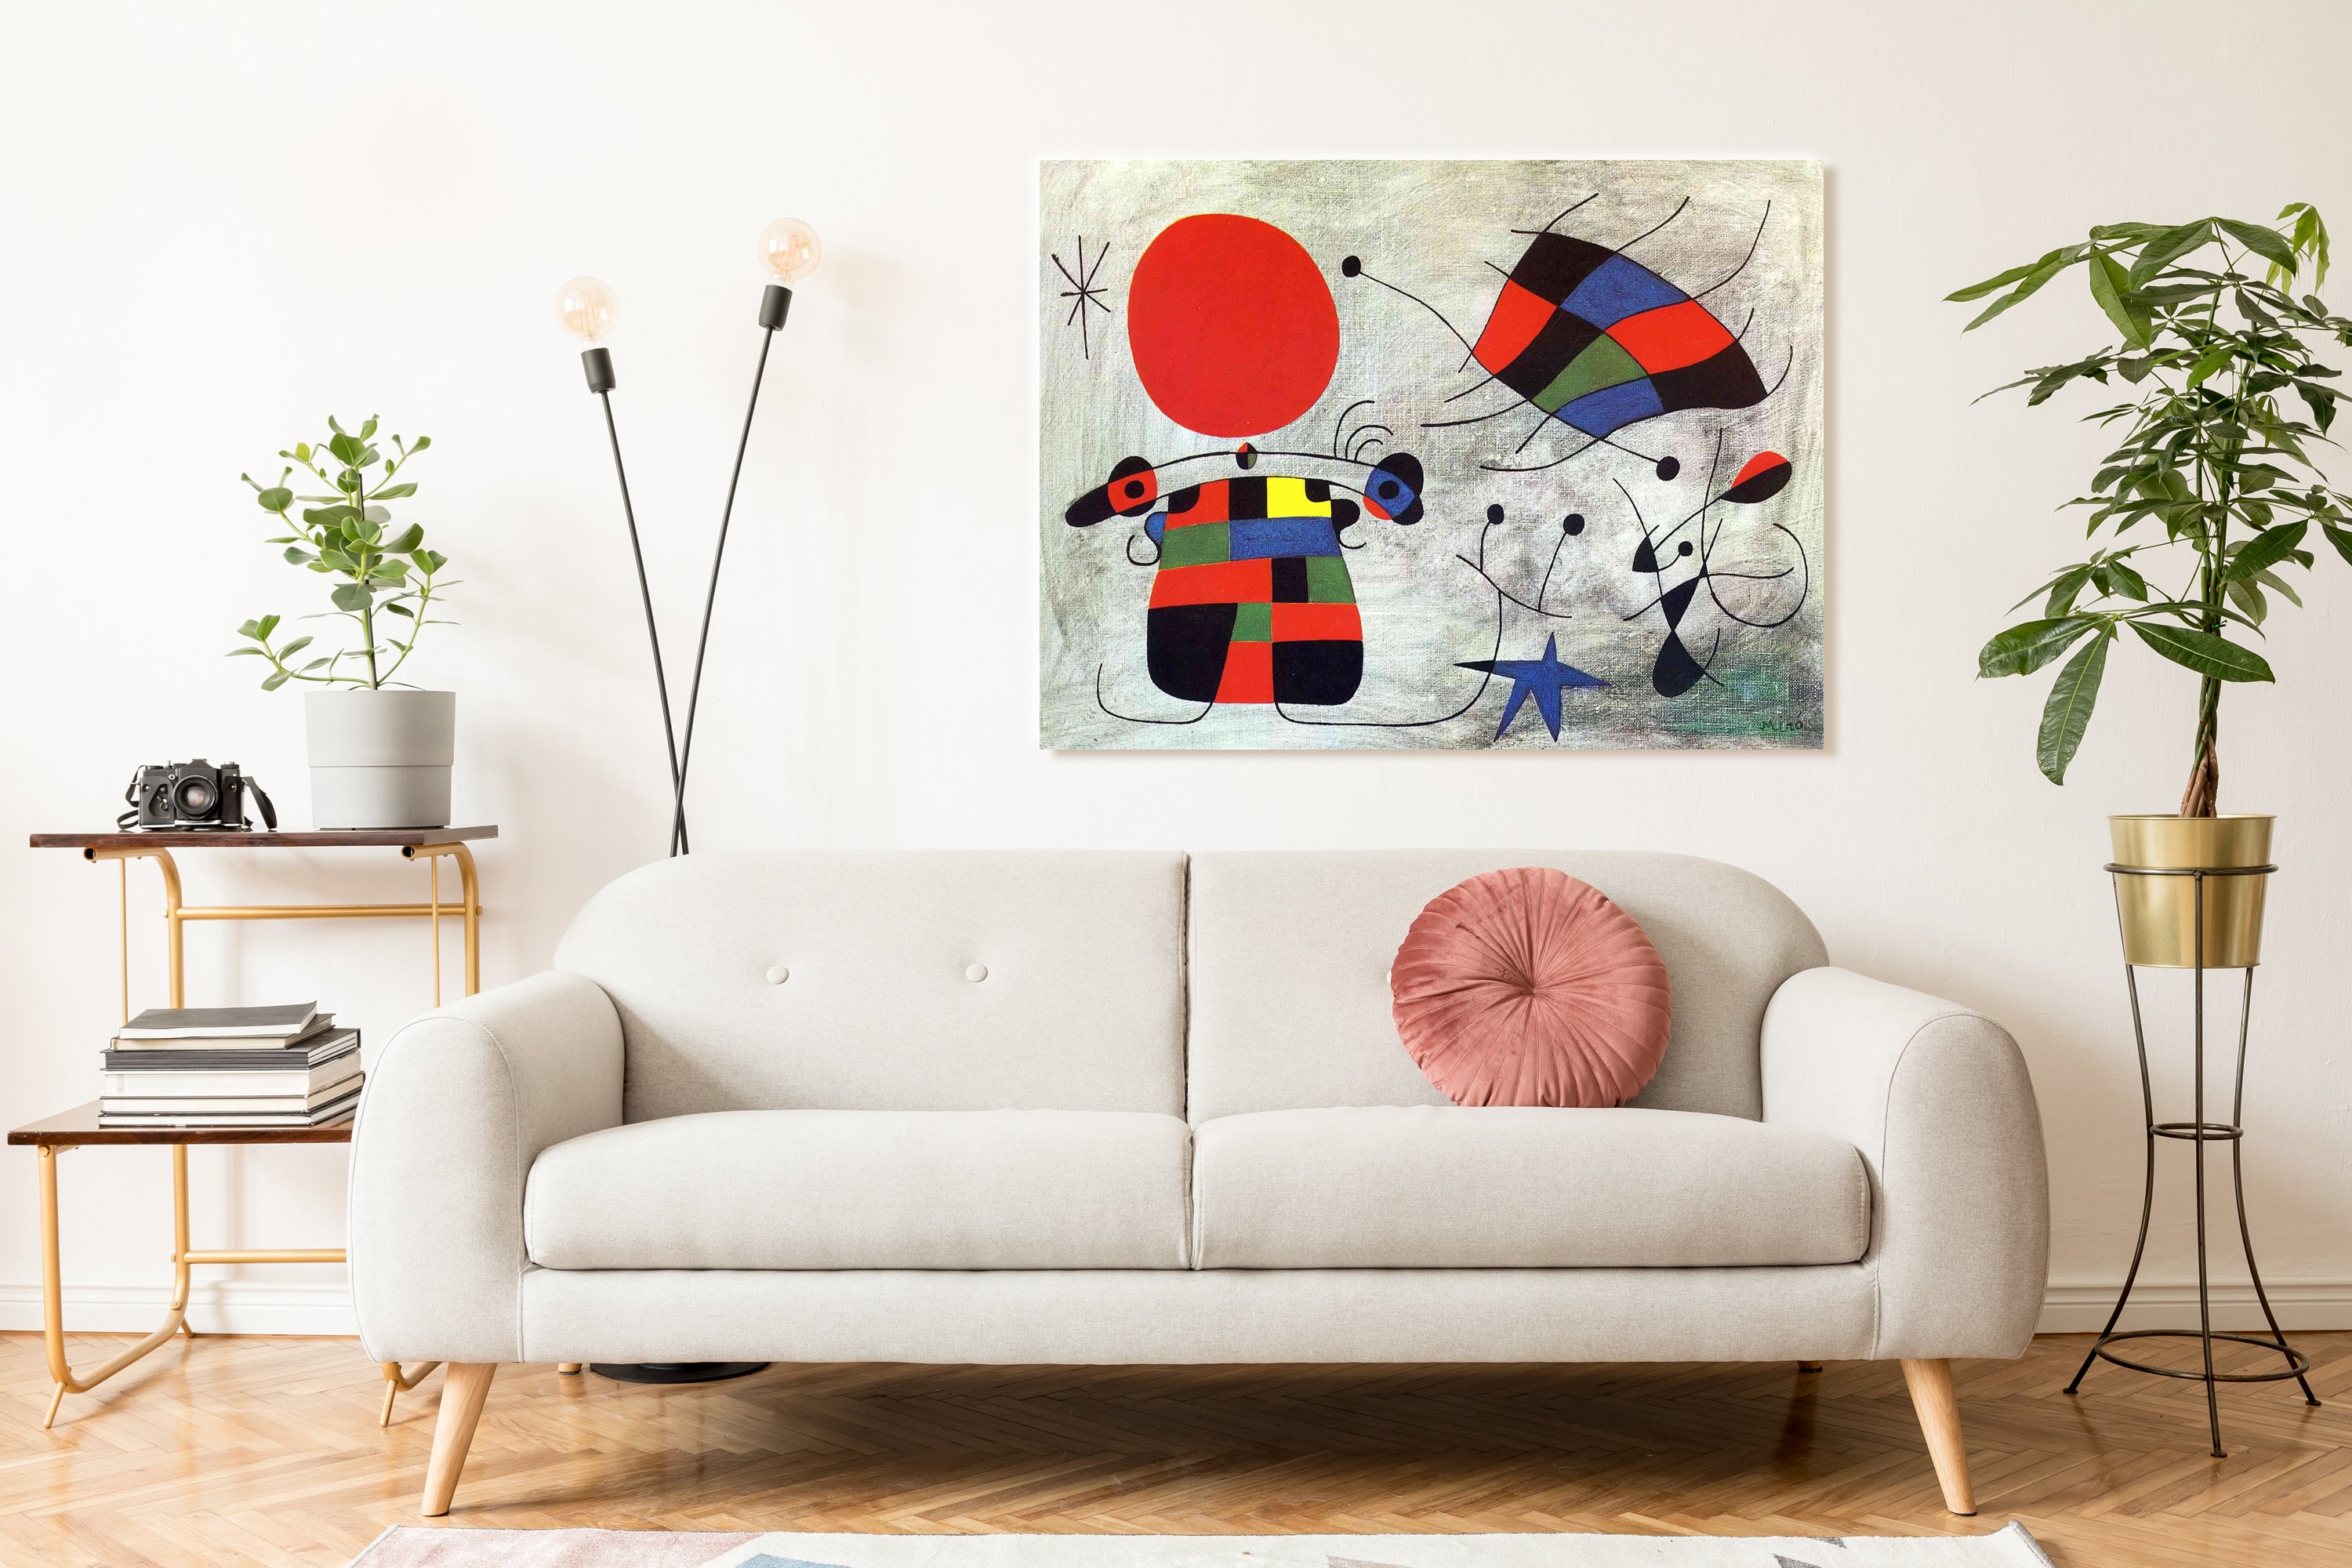 Cuadros de Miró al óleo